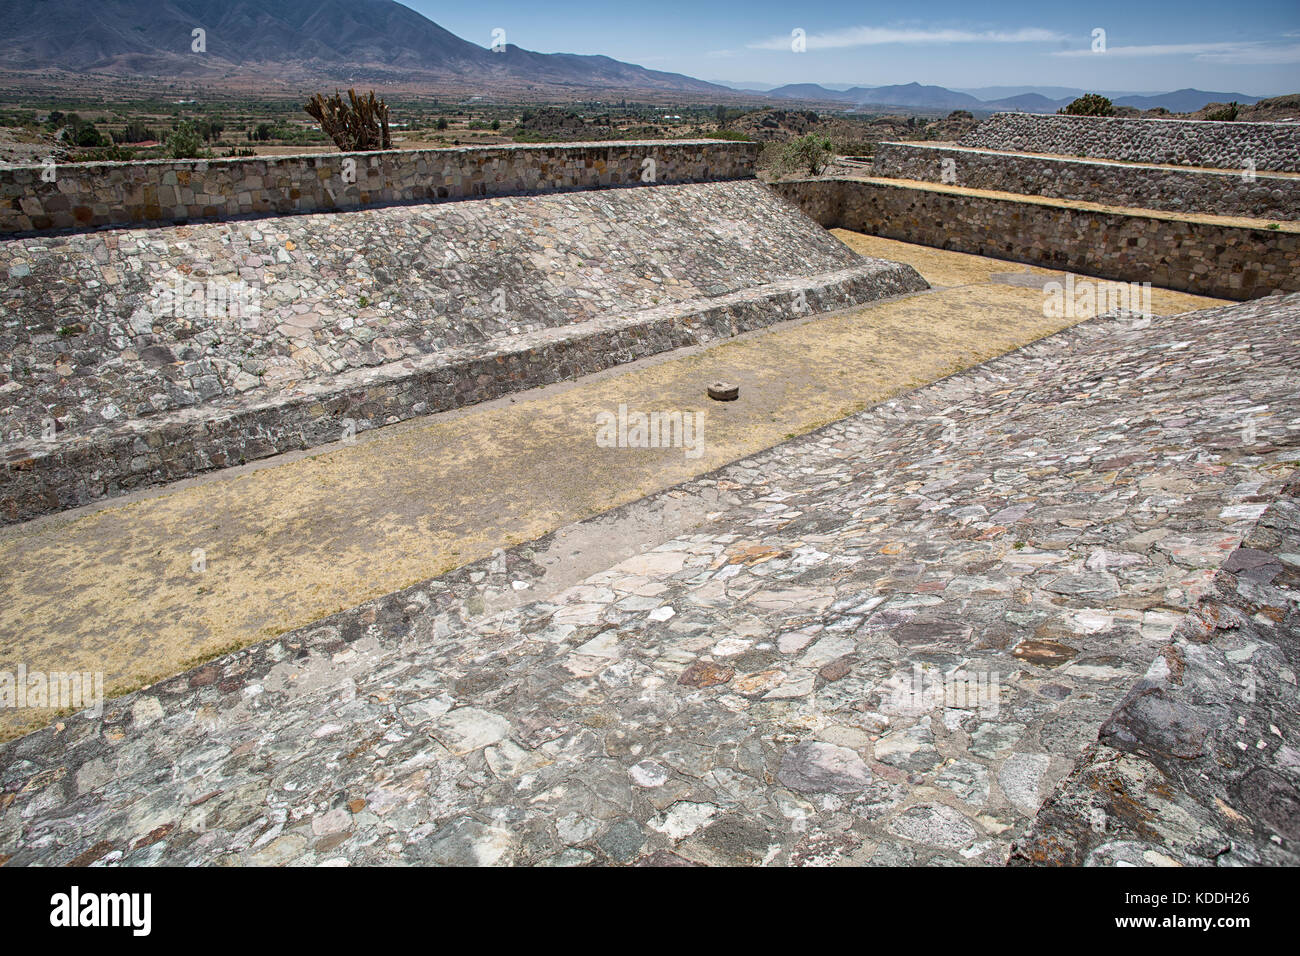 La cour de jeu de yagul ruines à Oaxaca au Mexique Banque D'Images